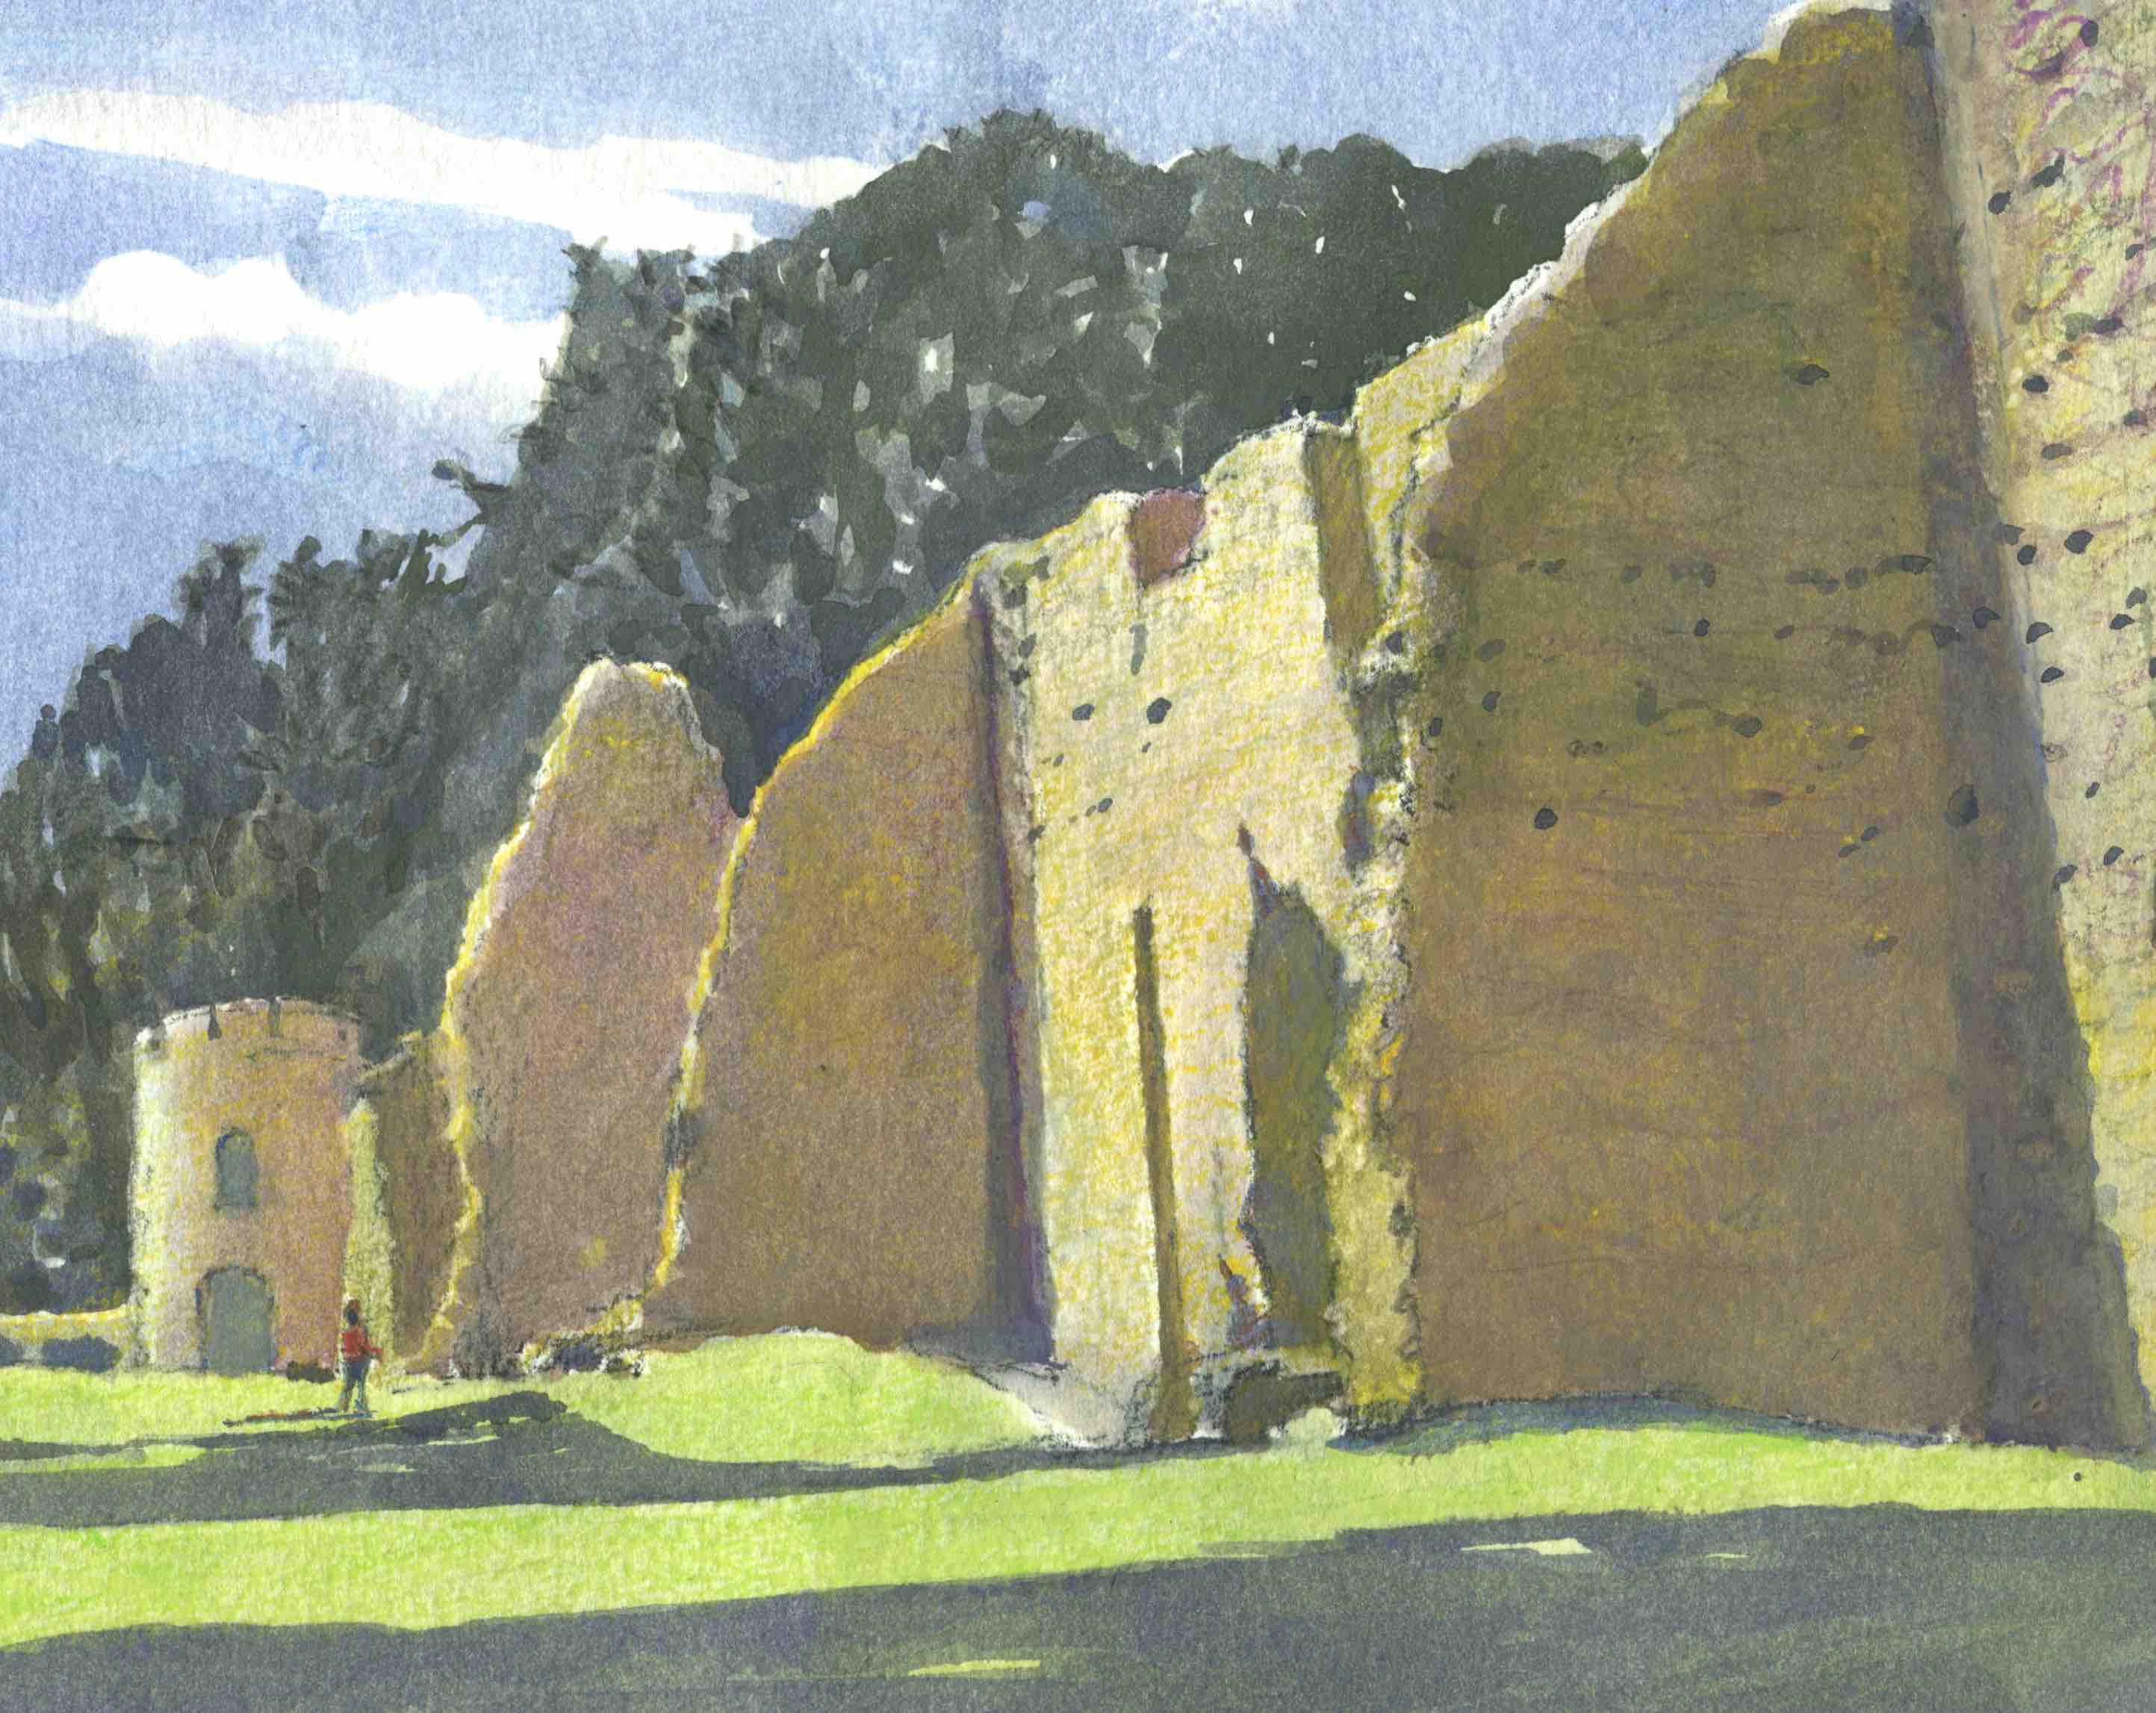 Priory ruins, Lewes